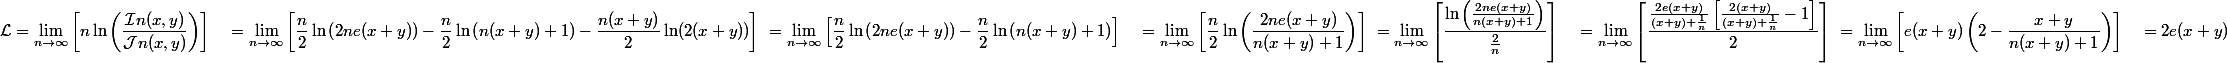 \begin{aligned} \mathcal{L} &= \lim_{n\rightarrow\infty} \left[n \ln\left(\frac{\mathcal{I}n(x,y)}{\mathcal{J}n(x,y)}\right)\right] \ &= \lim_{n\rightarrow\infty} \left[\frac{n}{2} \ln\left(2ne(x+y)\right) - \frac{n}{2} \ln\left(n(x+y)+1\right) - \frac{n(x+y)}{2} \ln(2(x+y))\right] \ &= \lim_{n\rightarrow\infty} \left[\frac{n}{2} \ln\left(2ne(x+y)\right) - \frac{n}{2} \ln\left(n(x+y)+1\right)\right] \ &= \lim_{n\rightarrow\infty} \left[\frac{n}{2} \ln\left(\frac{2ne(x+y)}{n(x+y)+1}\right)\right] \ &= \lim_{n\rightarrow\infty} \left[\frac{\ln\left(\frac{2ne(x+y)}{n(x+y)+1}\right)}{\frac{2}{n}}\right] \ &= \lim_{n\rightarrow\infty} \left[\frac{\frac{2e(x+y)}{(x+y)+\frac{1}{n}}\left[\frac{2(x+y)}{(x+y)+\frac{1}{n}}-1\right]}{2}\right] \ &= \lim_{n\rightarrow\infty} \left[e(x+y)\left(2-\frac{x+y}{n(x+y)+1}\right)\right] \ &= 2e(x+y) \end{aligned}